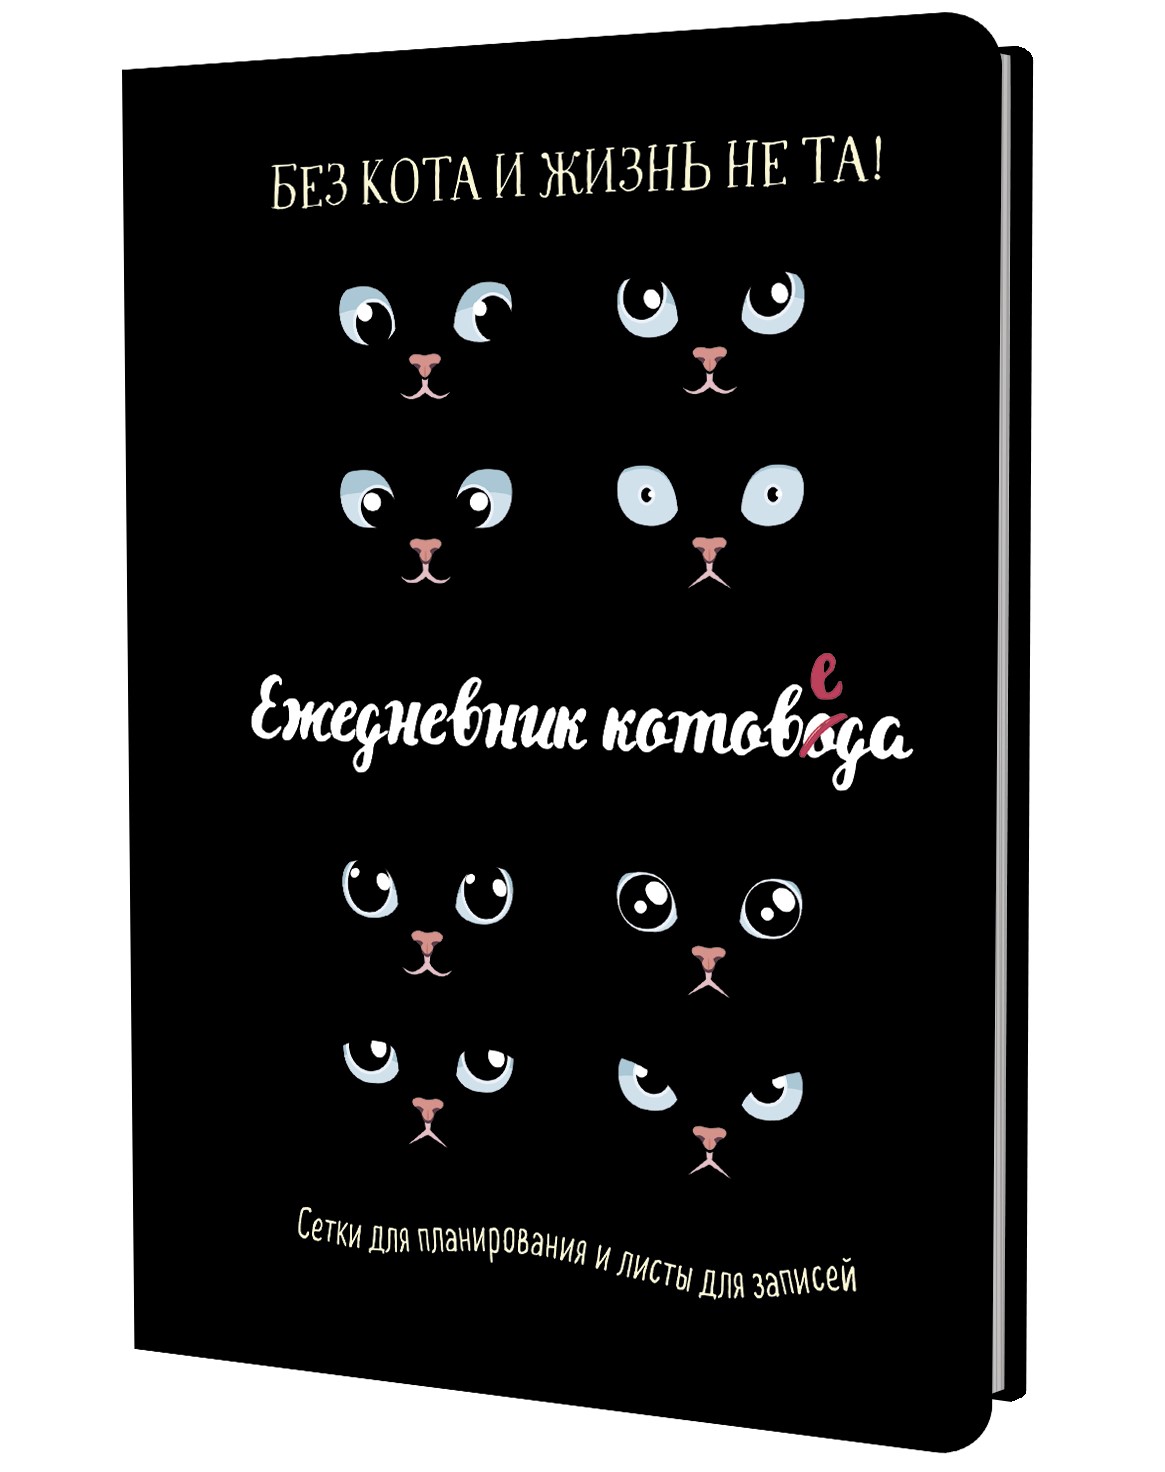 Ежедневник занятого котика котоведа (черный)